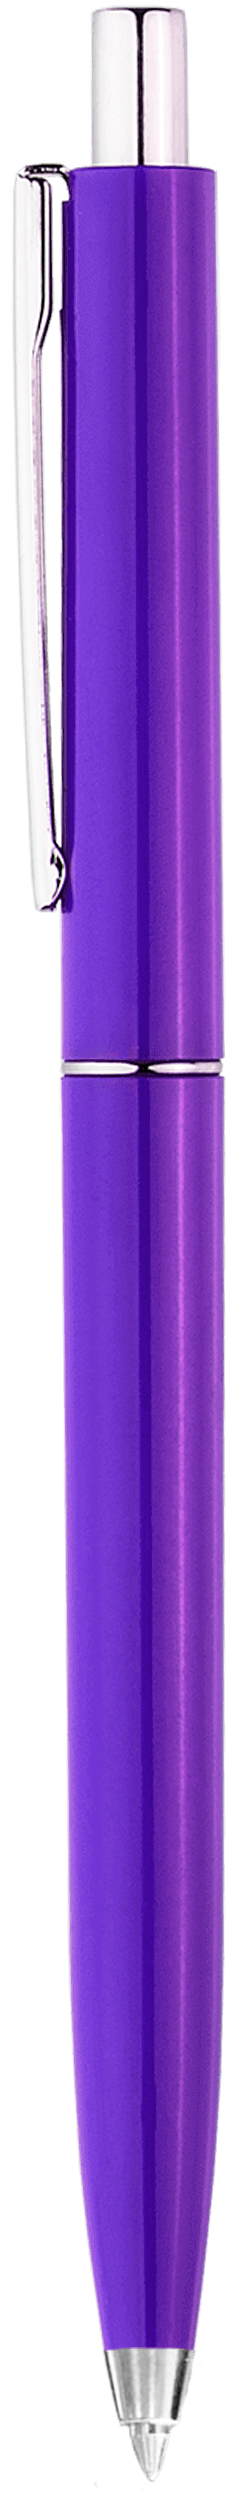 Ручка TOP NEW, фиолетовая